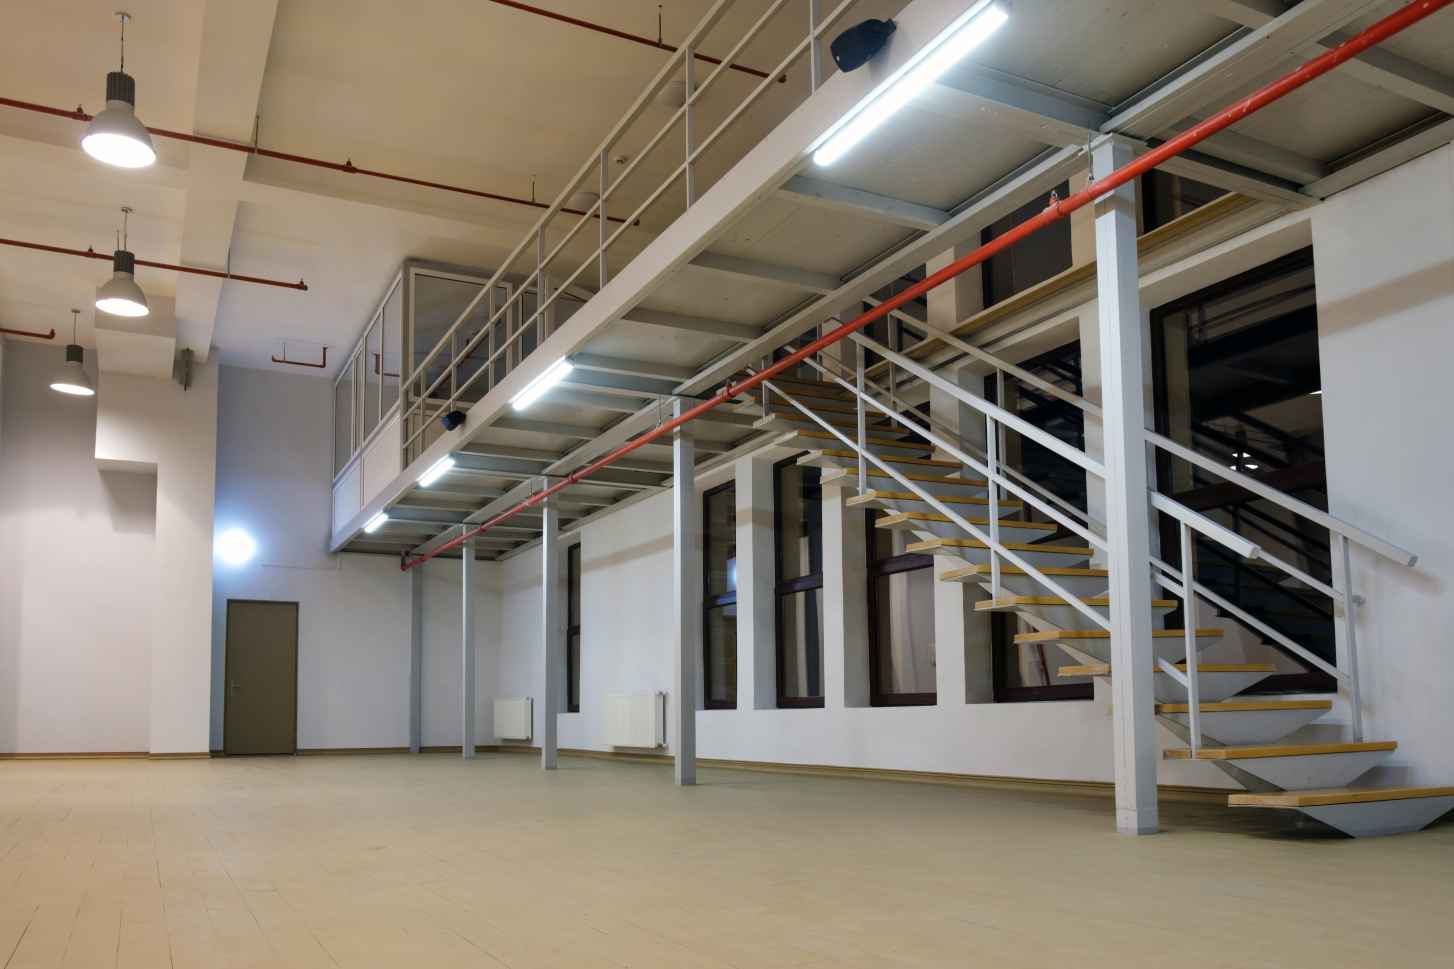 Mezzanine floor in a factory